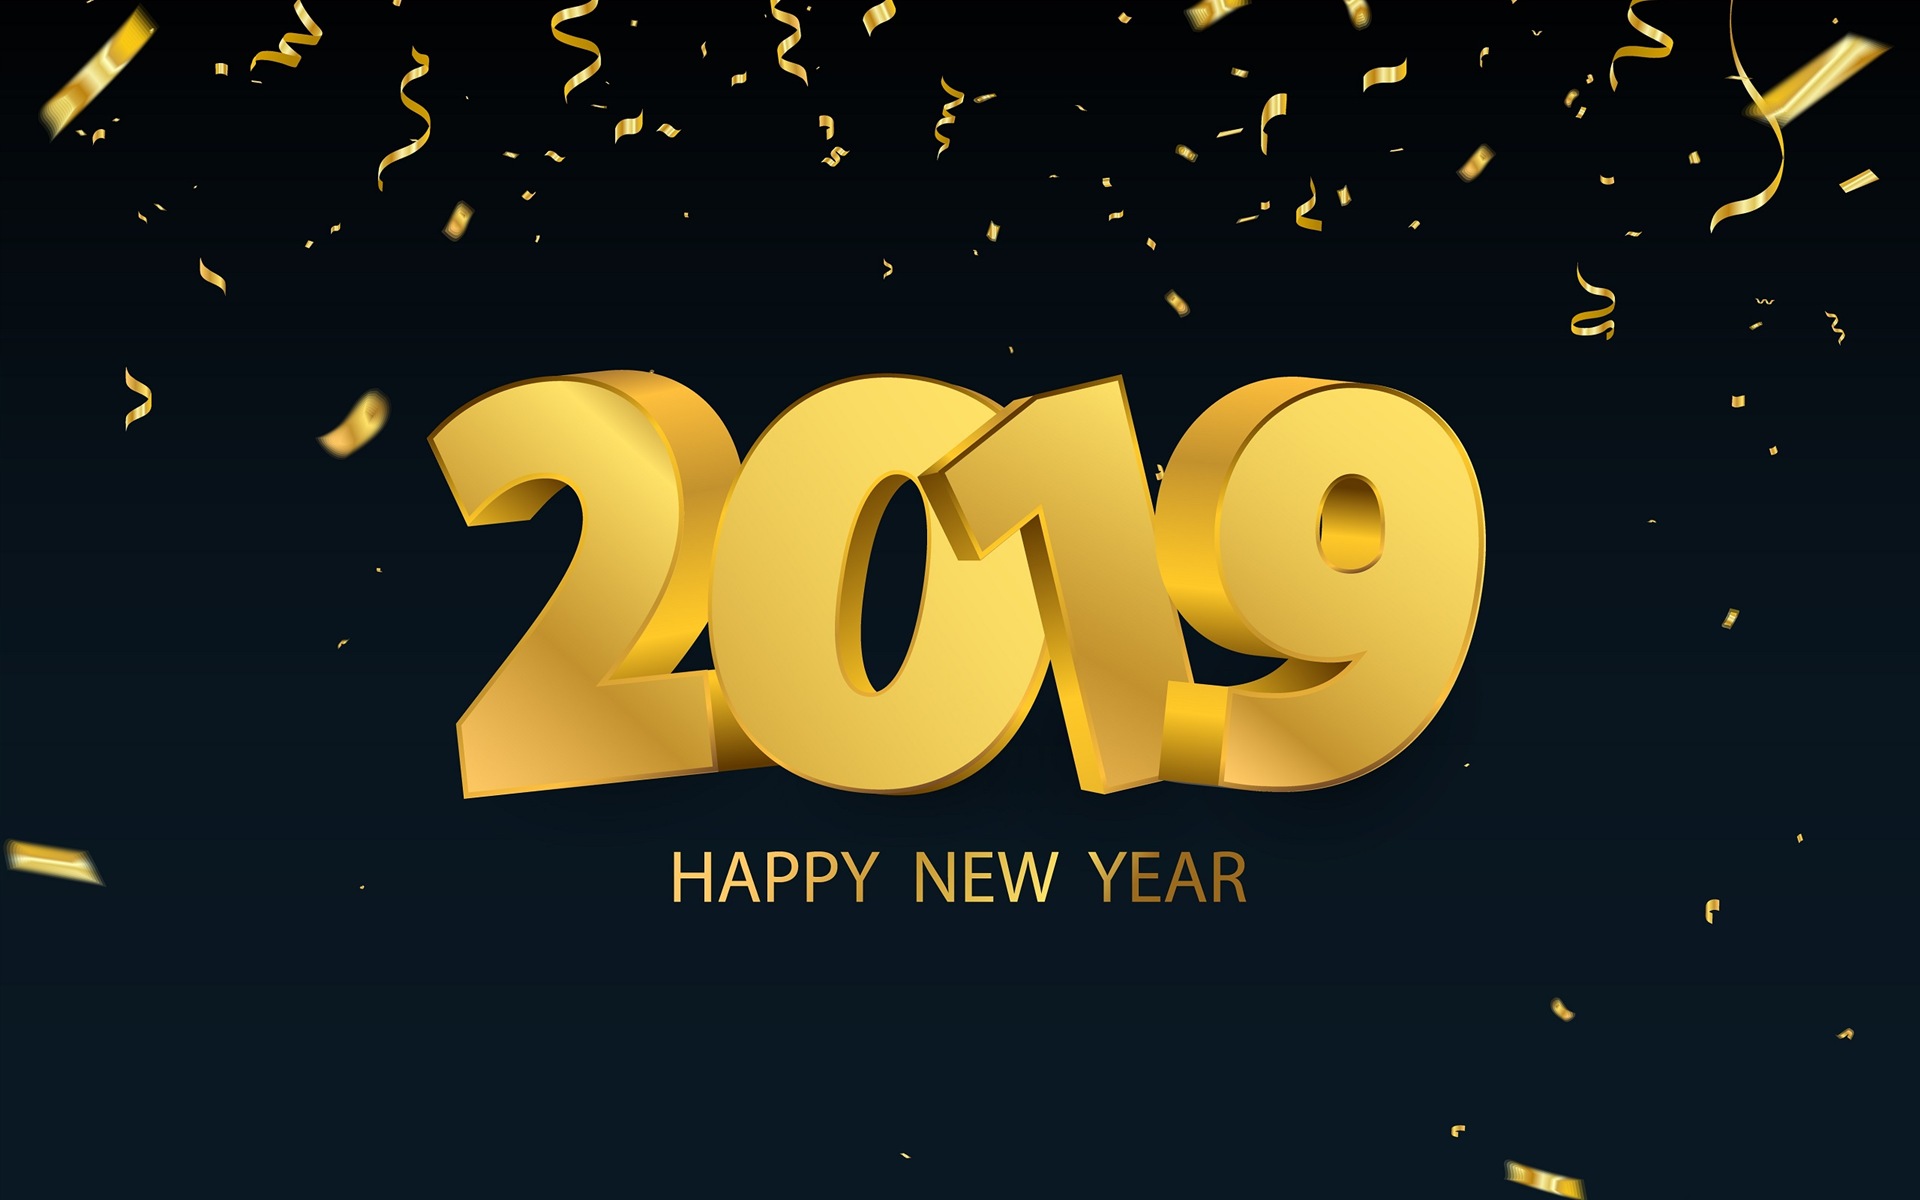 Feliz año nuevo 2019 HD wallpapers #13 - 1920x1200